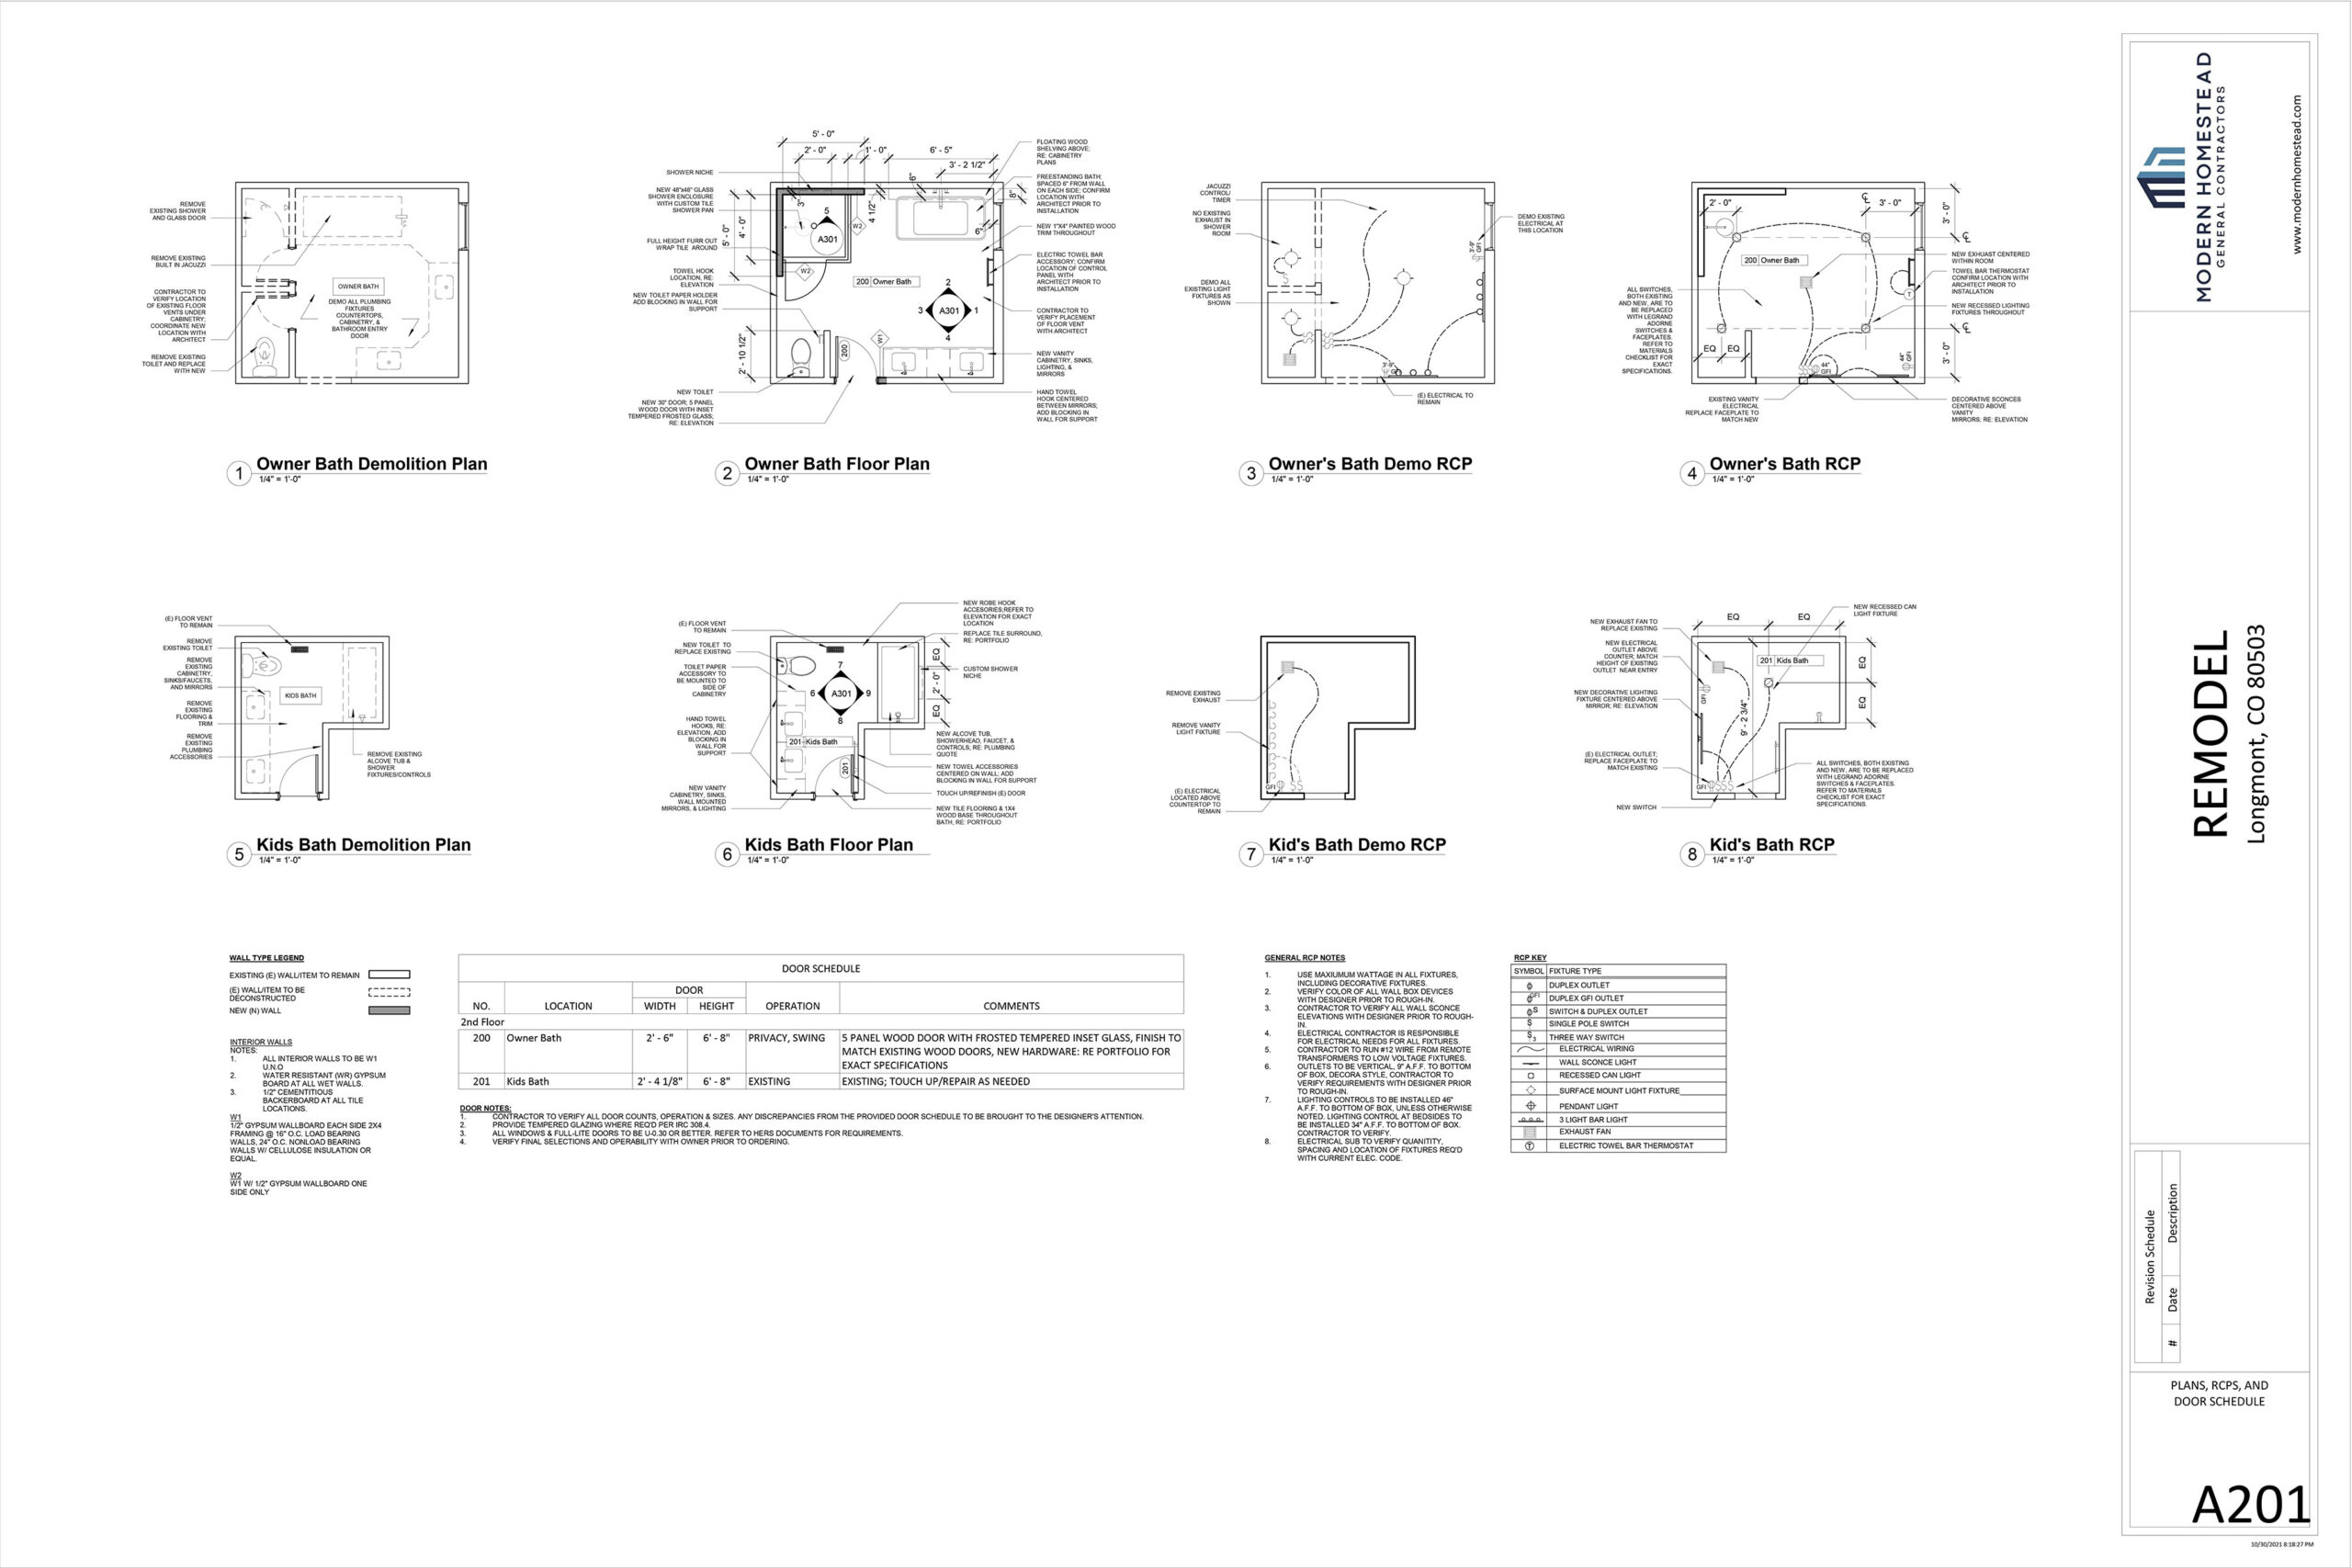 Design of Niwot Home Remodeling with Demolition Plan